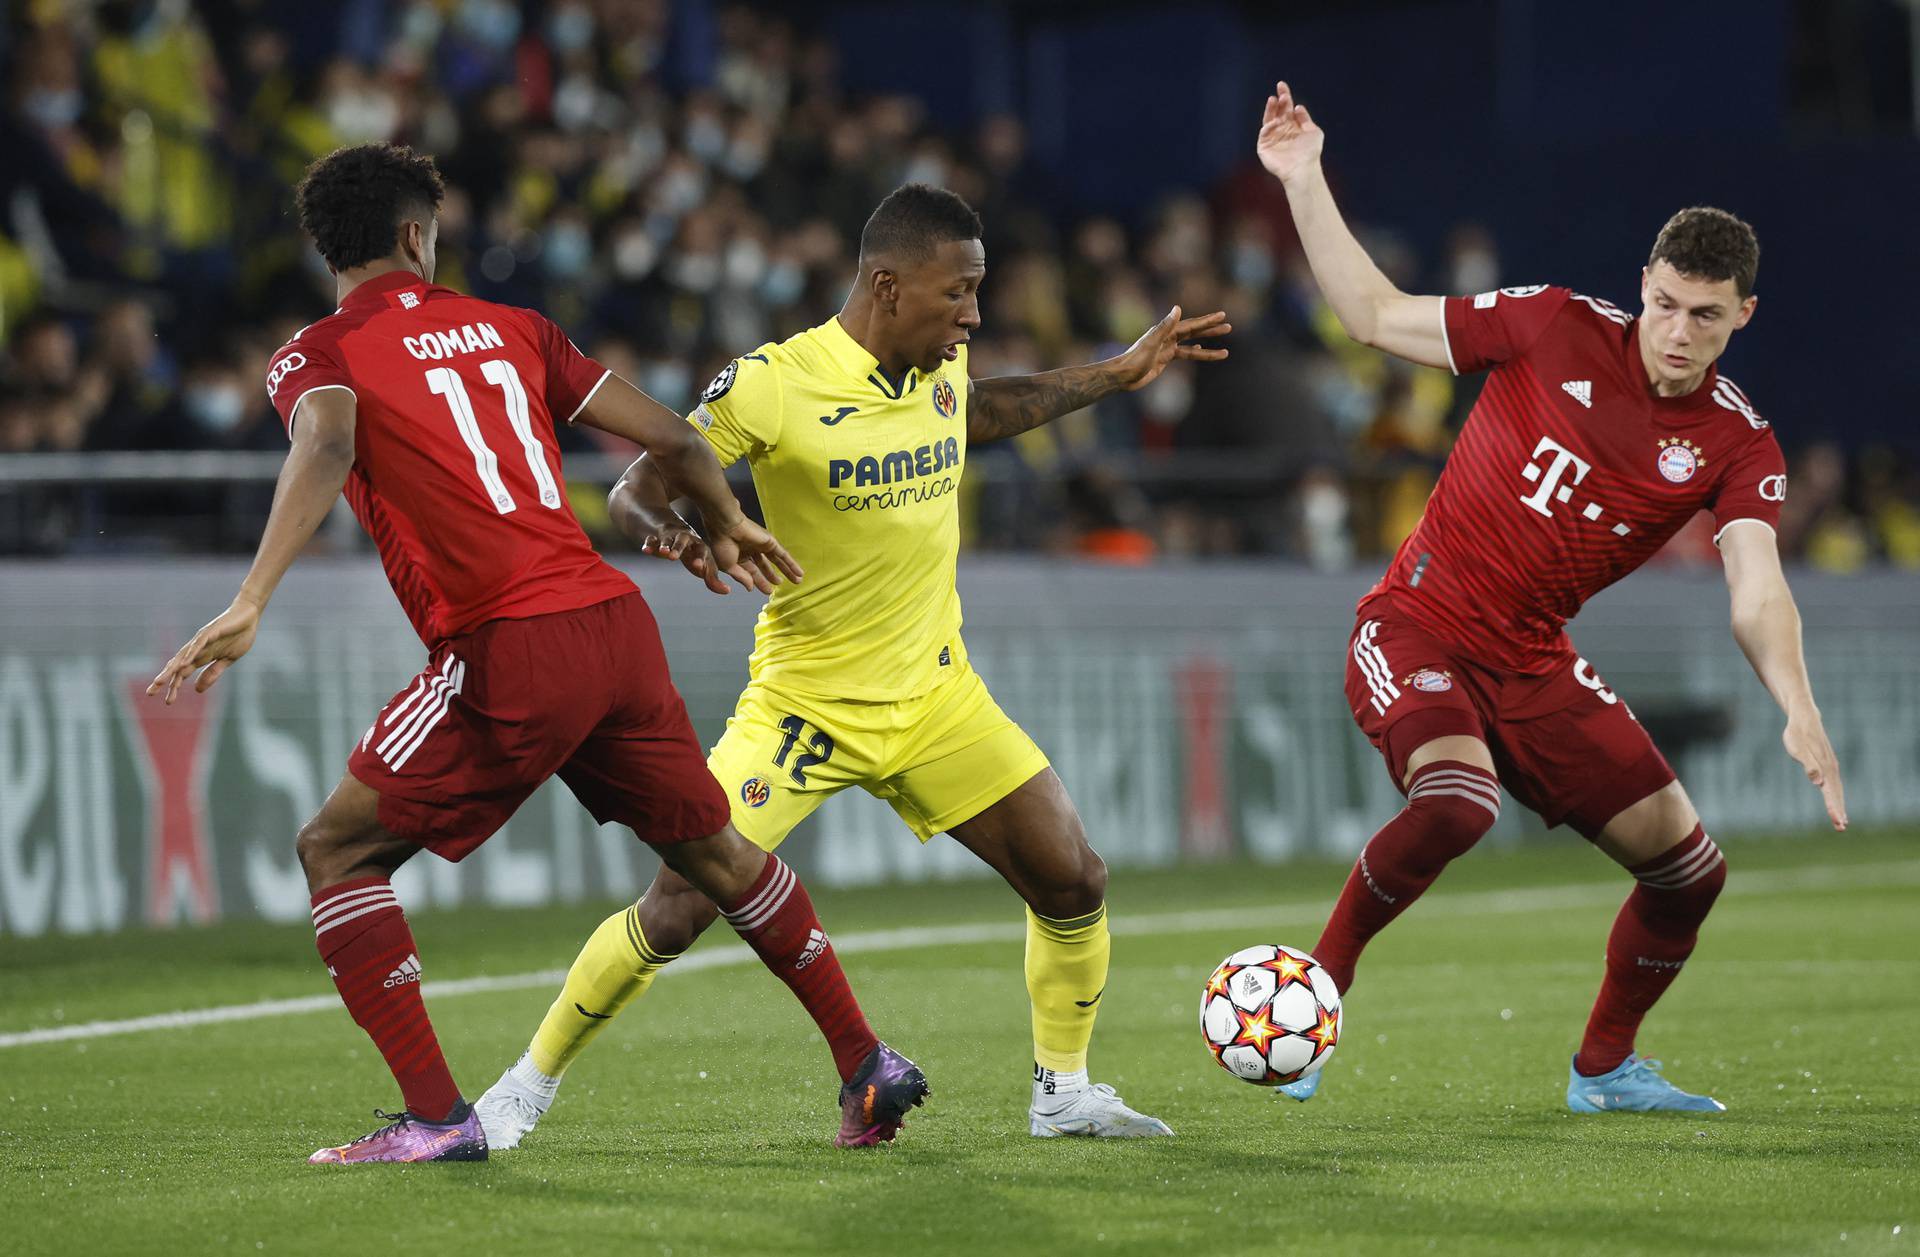 Champions League - Quarter Final - First Leg - Villarreal v Bayern Munich